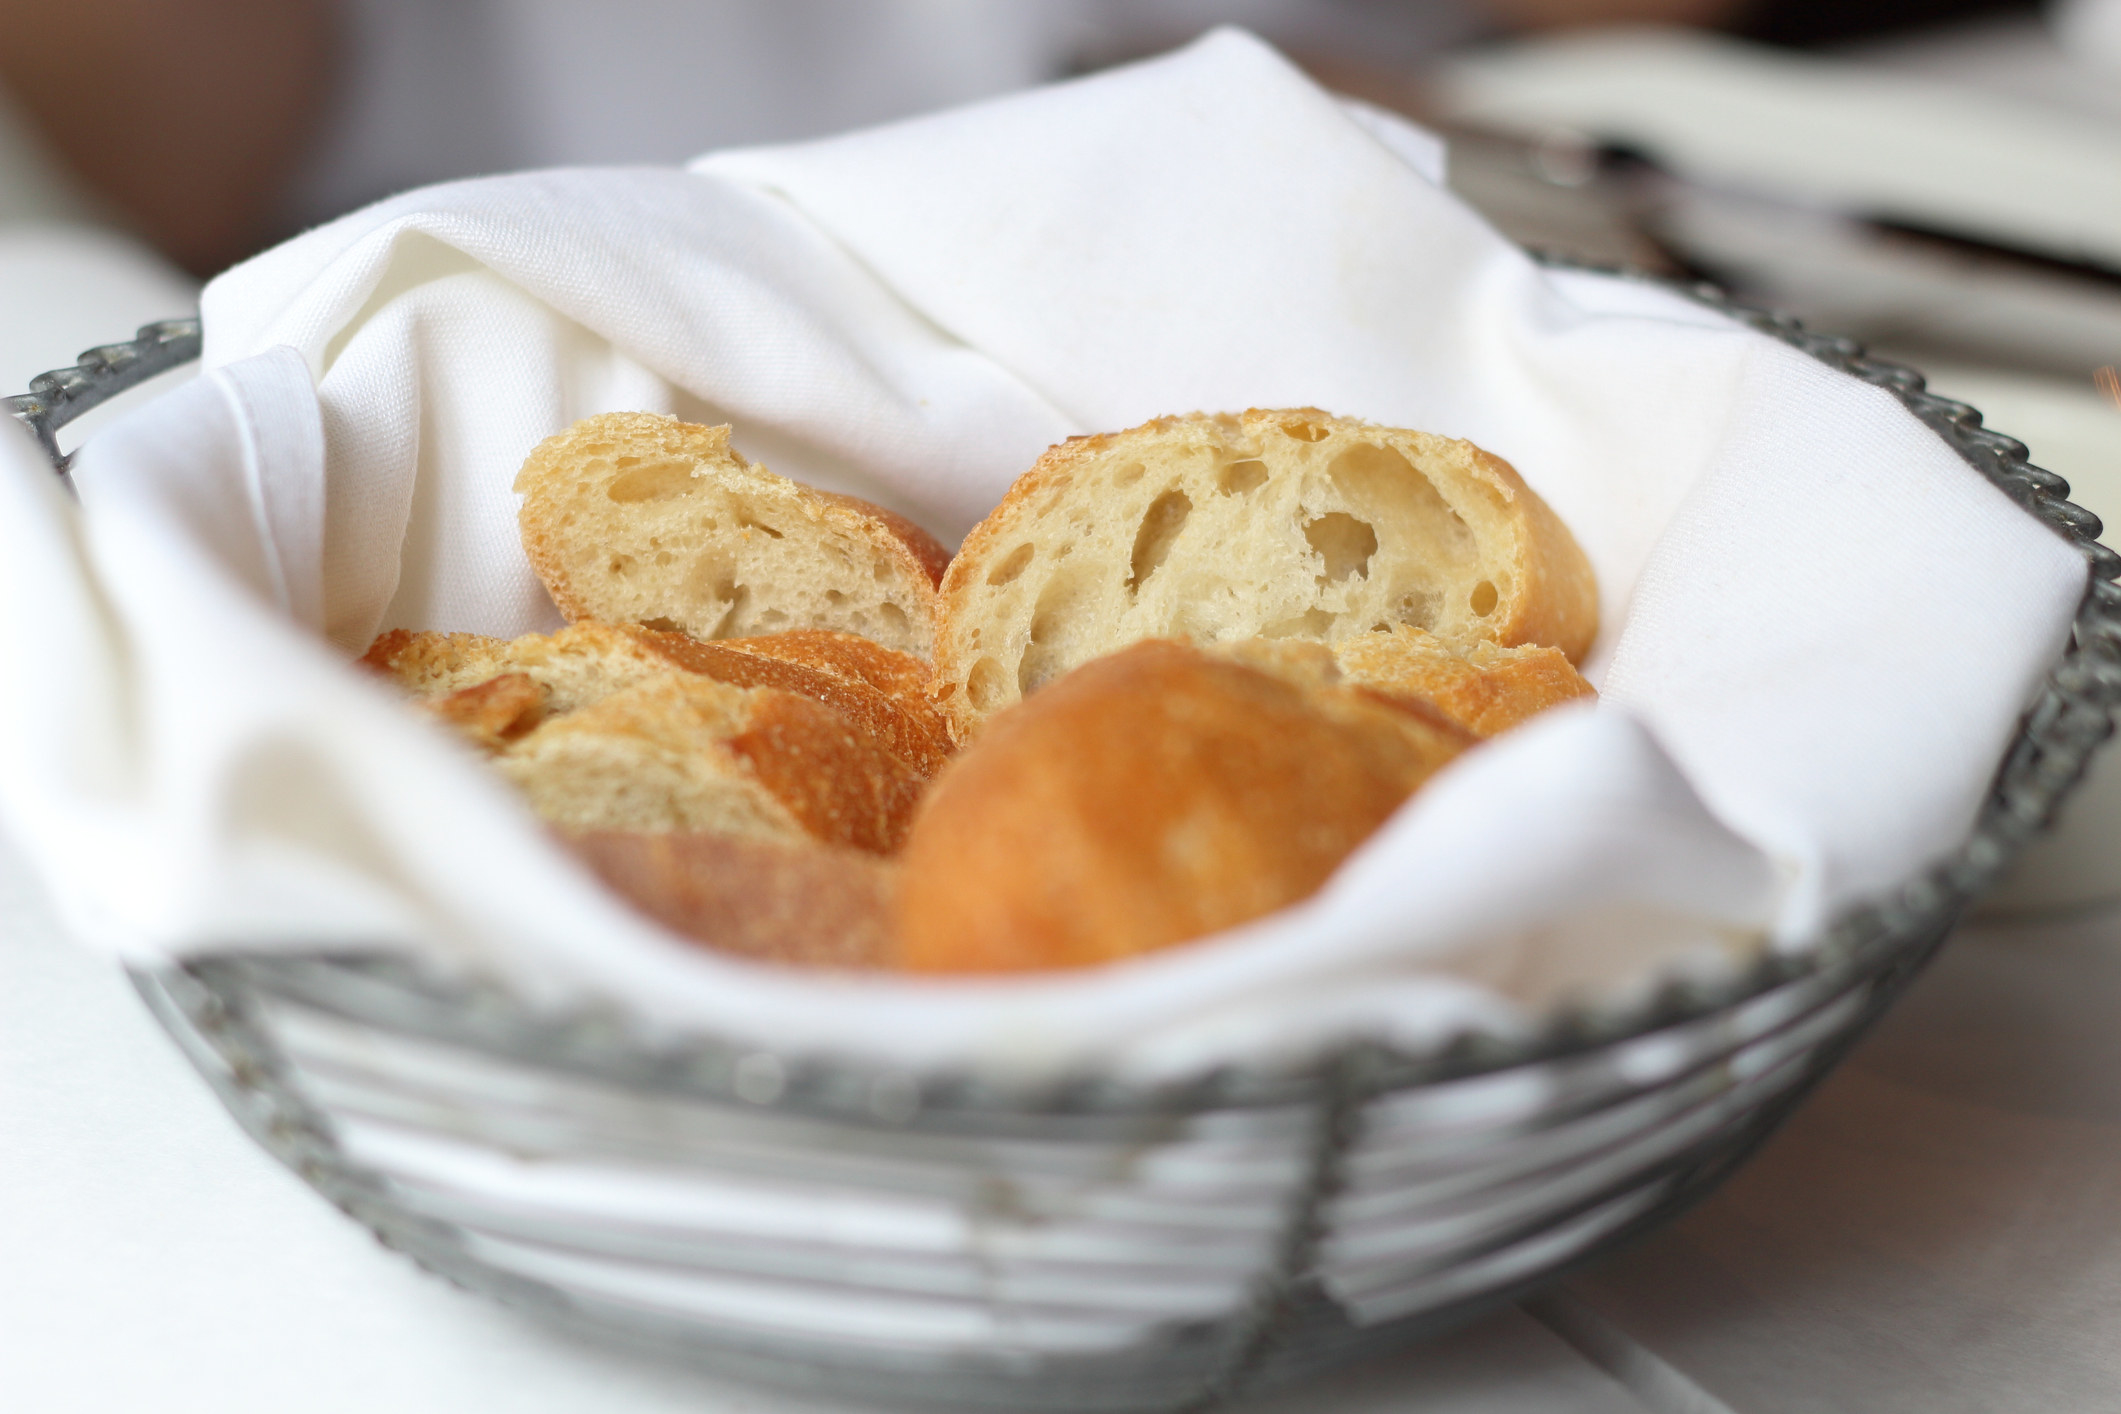 A basket of fresh bread.